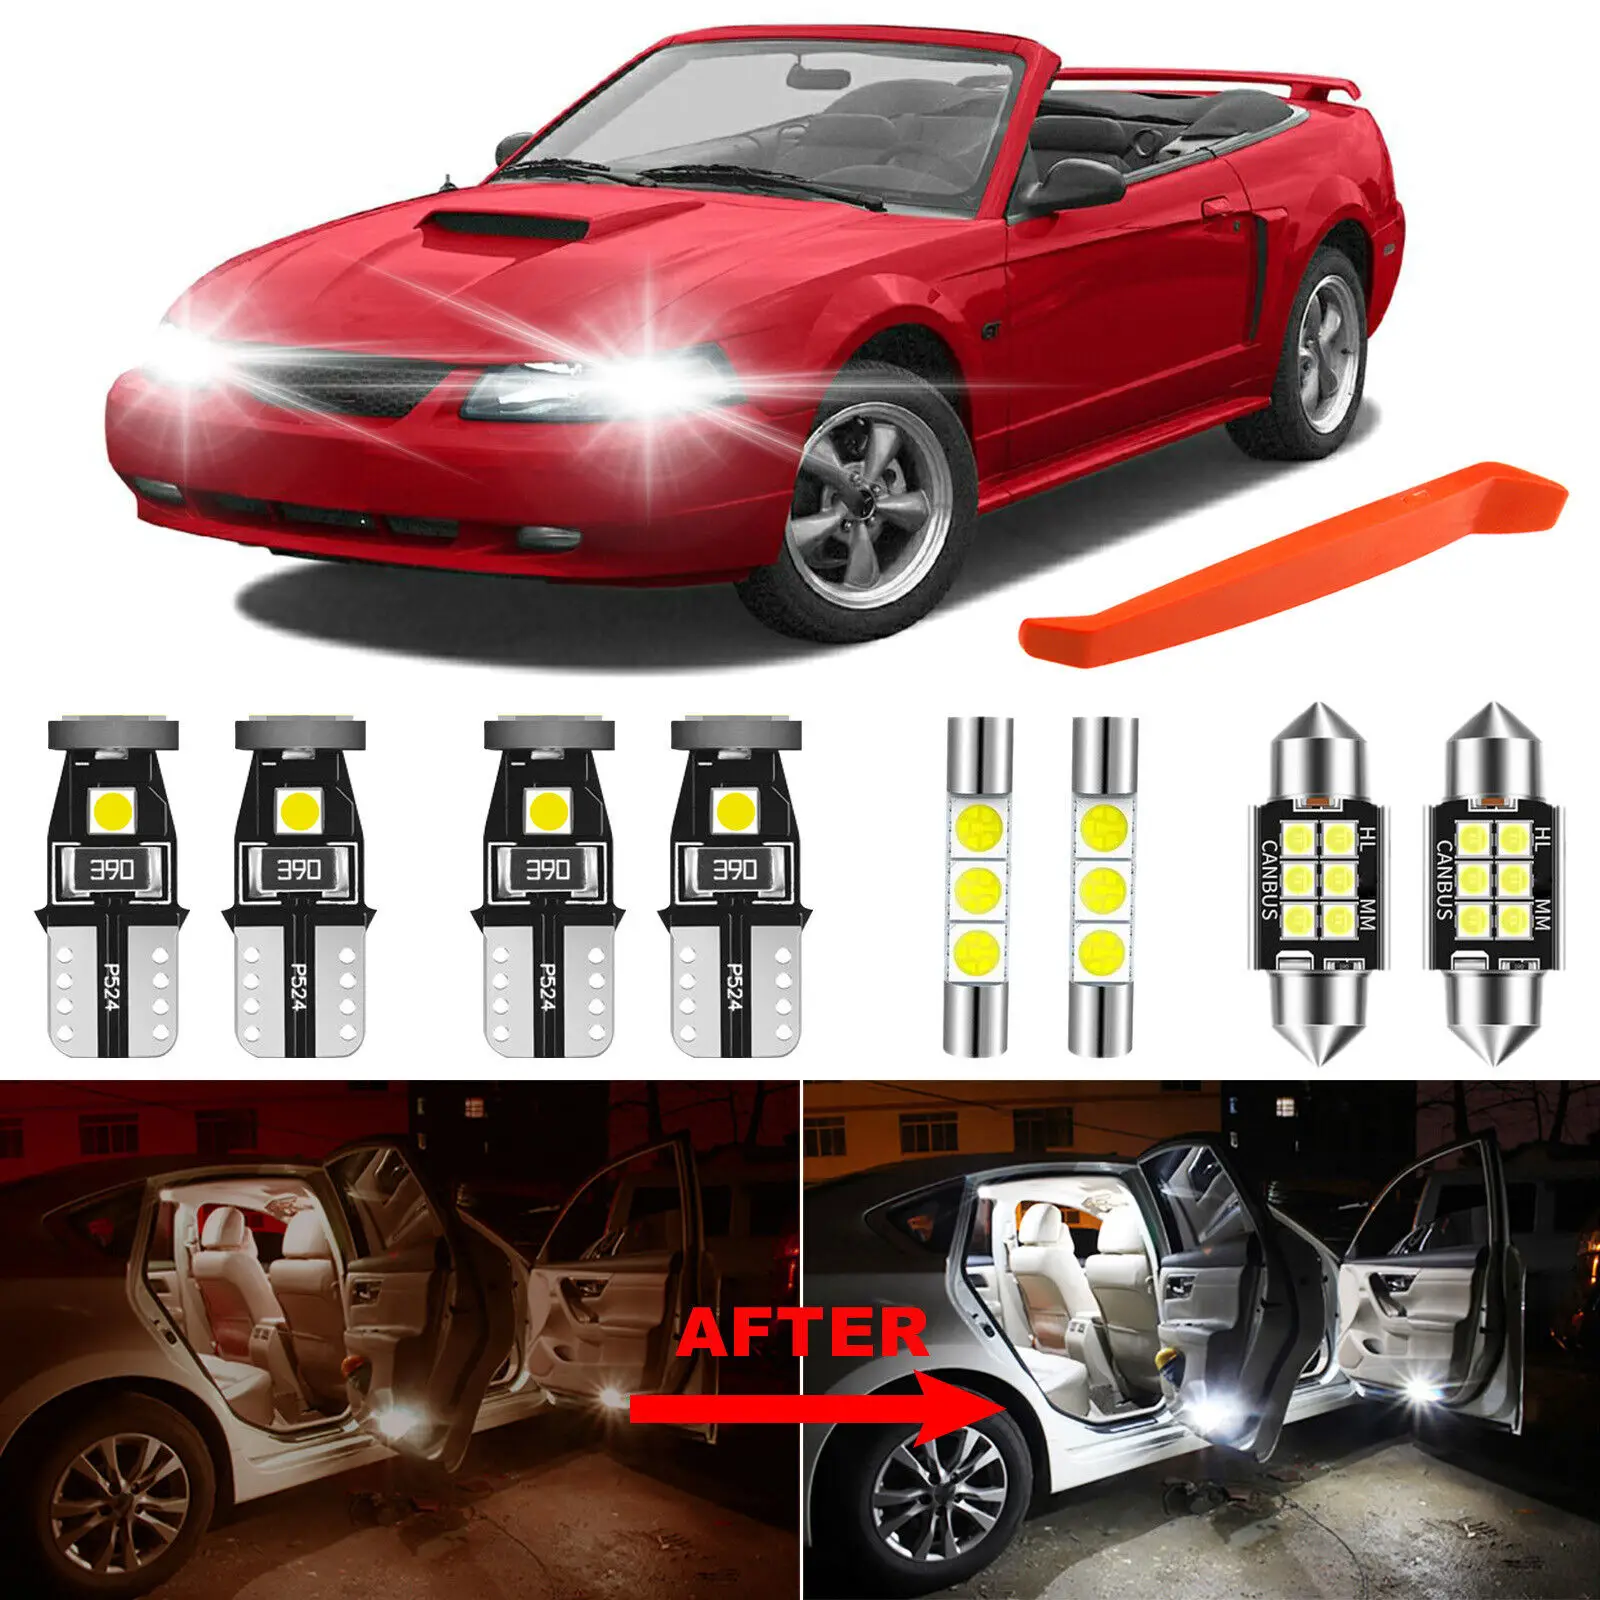 

Winetis 11Pcs For 1999-2004 Ford Mustang 6000K White LED Interior Light Bulbs Package Kit + Free Tool